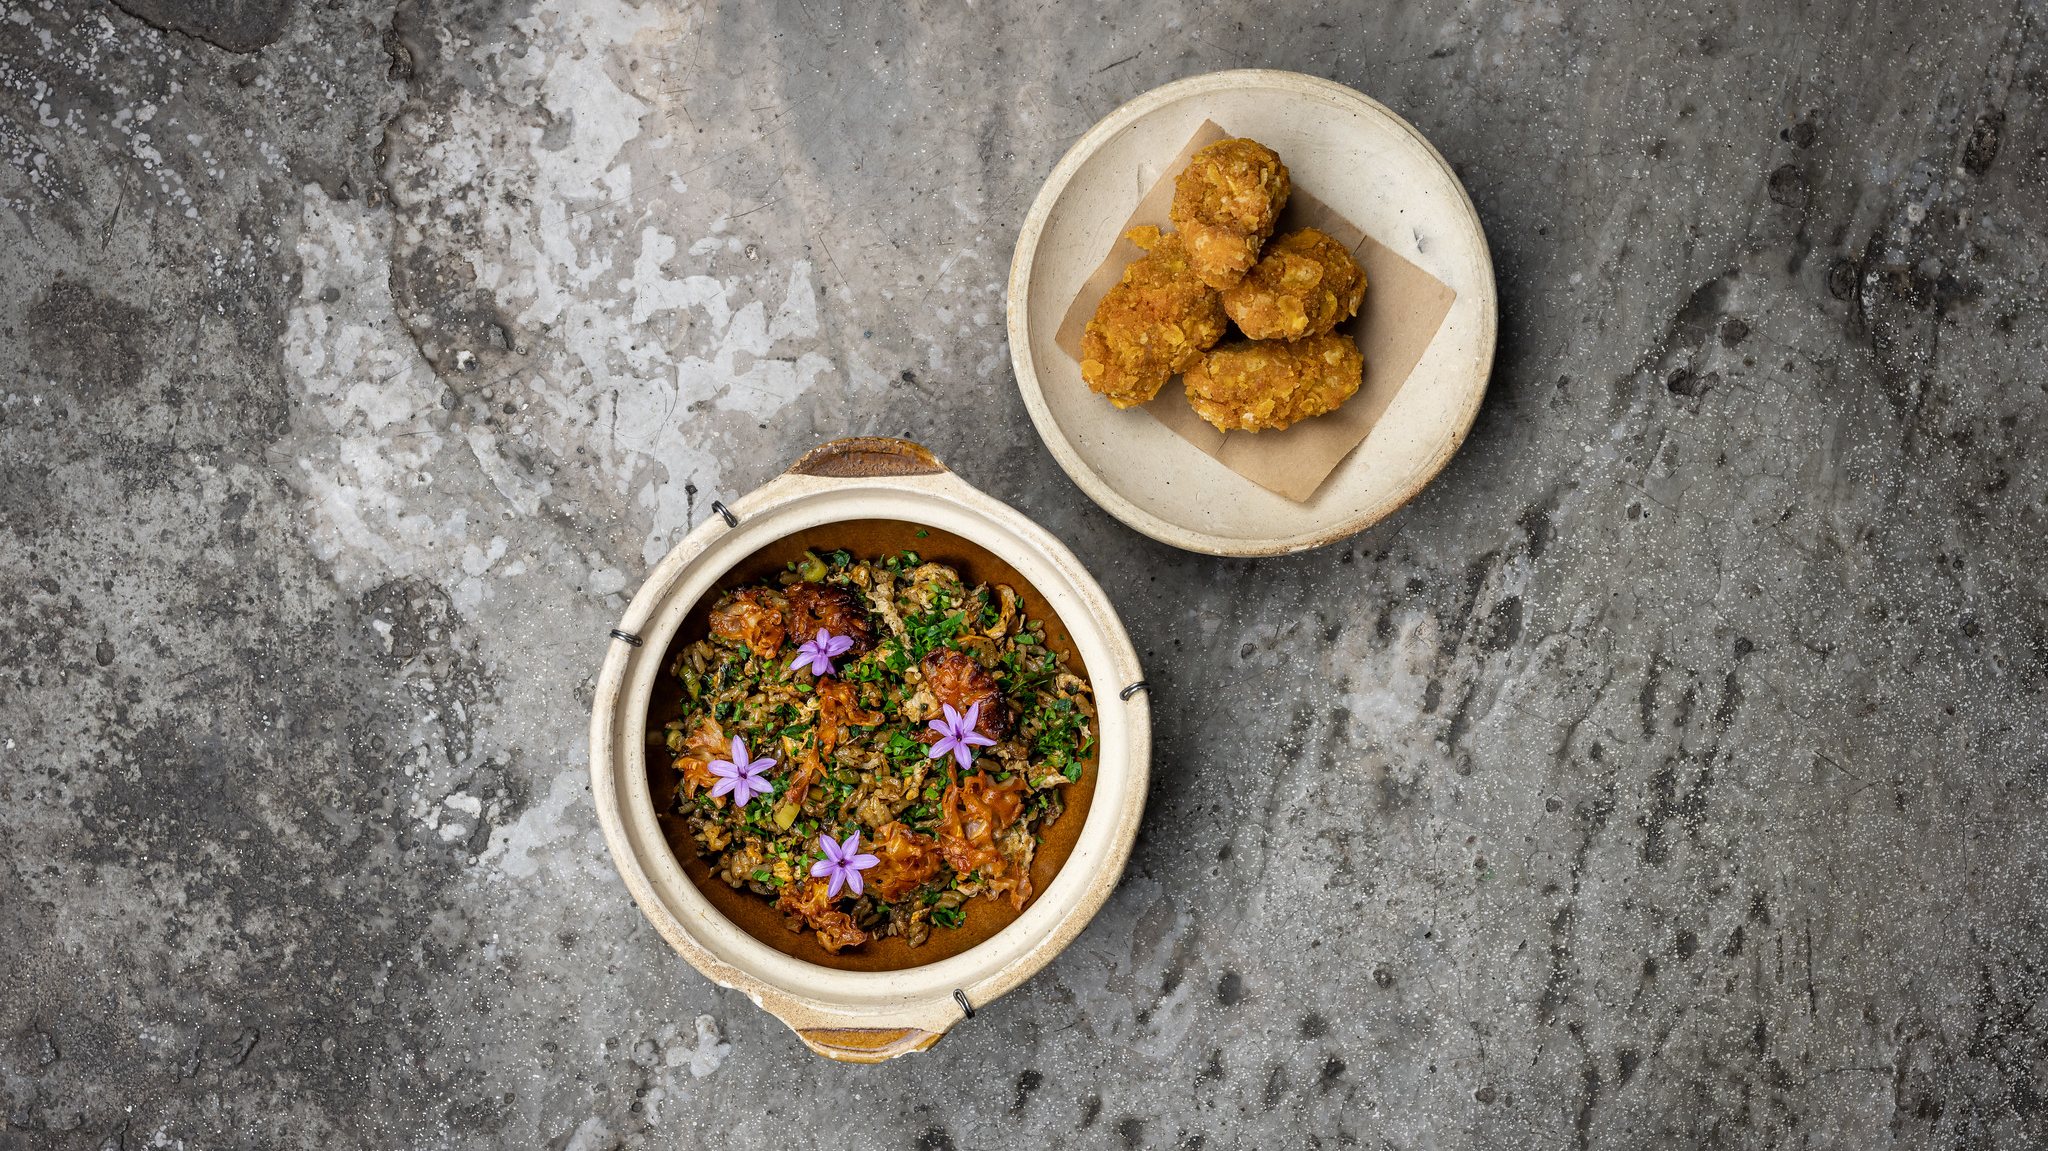 A proposta de David Jesus para mais um Chefs on Fire: arroz frito em wok e cogumelos em tempura.